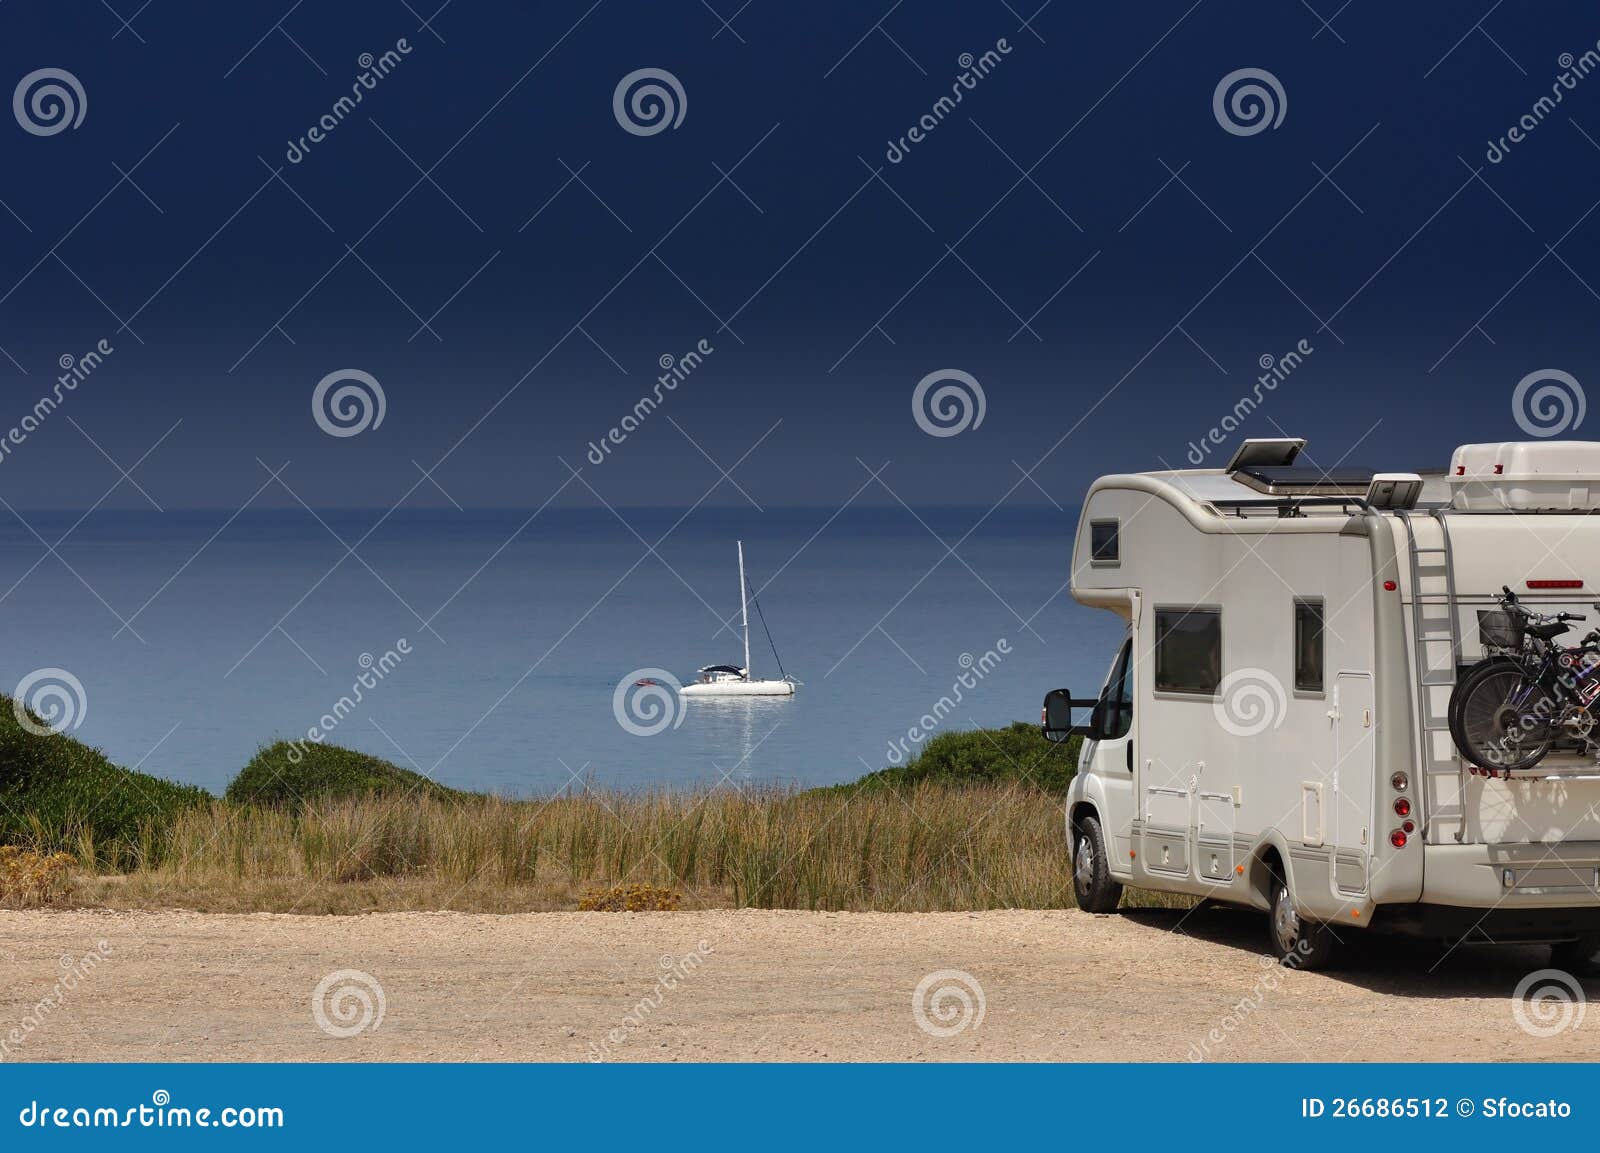 camper van on the beach